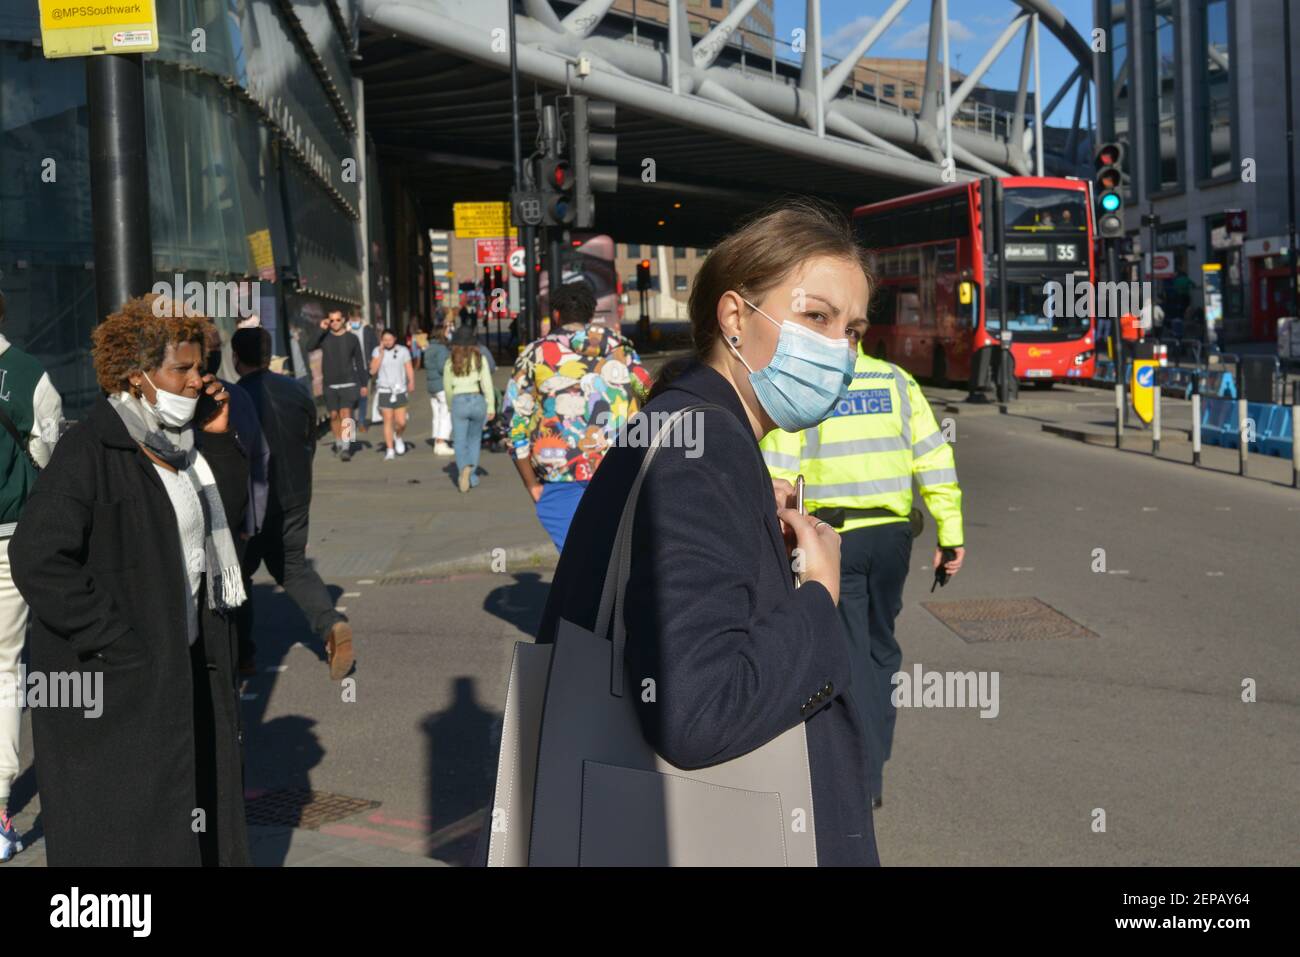 Una mujer que lleva una máscara facial como protección contra el coronavirus (covid-19) pasa por una calle en London Bridge, Londres, Reino Unido Foto de stock